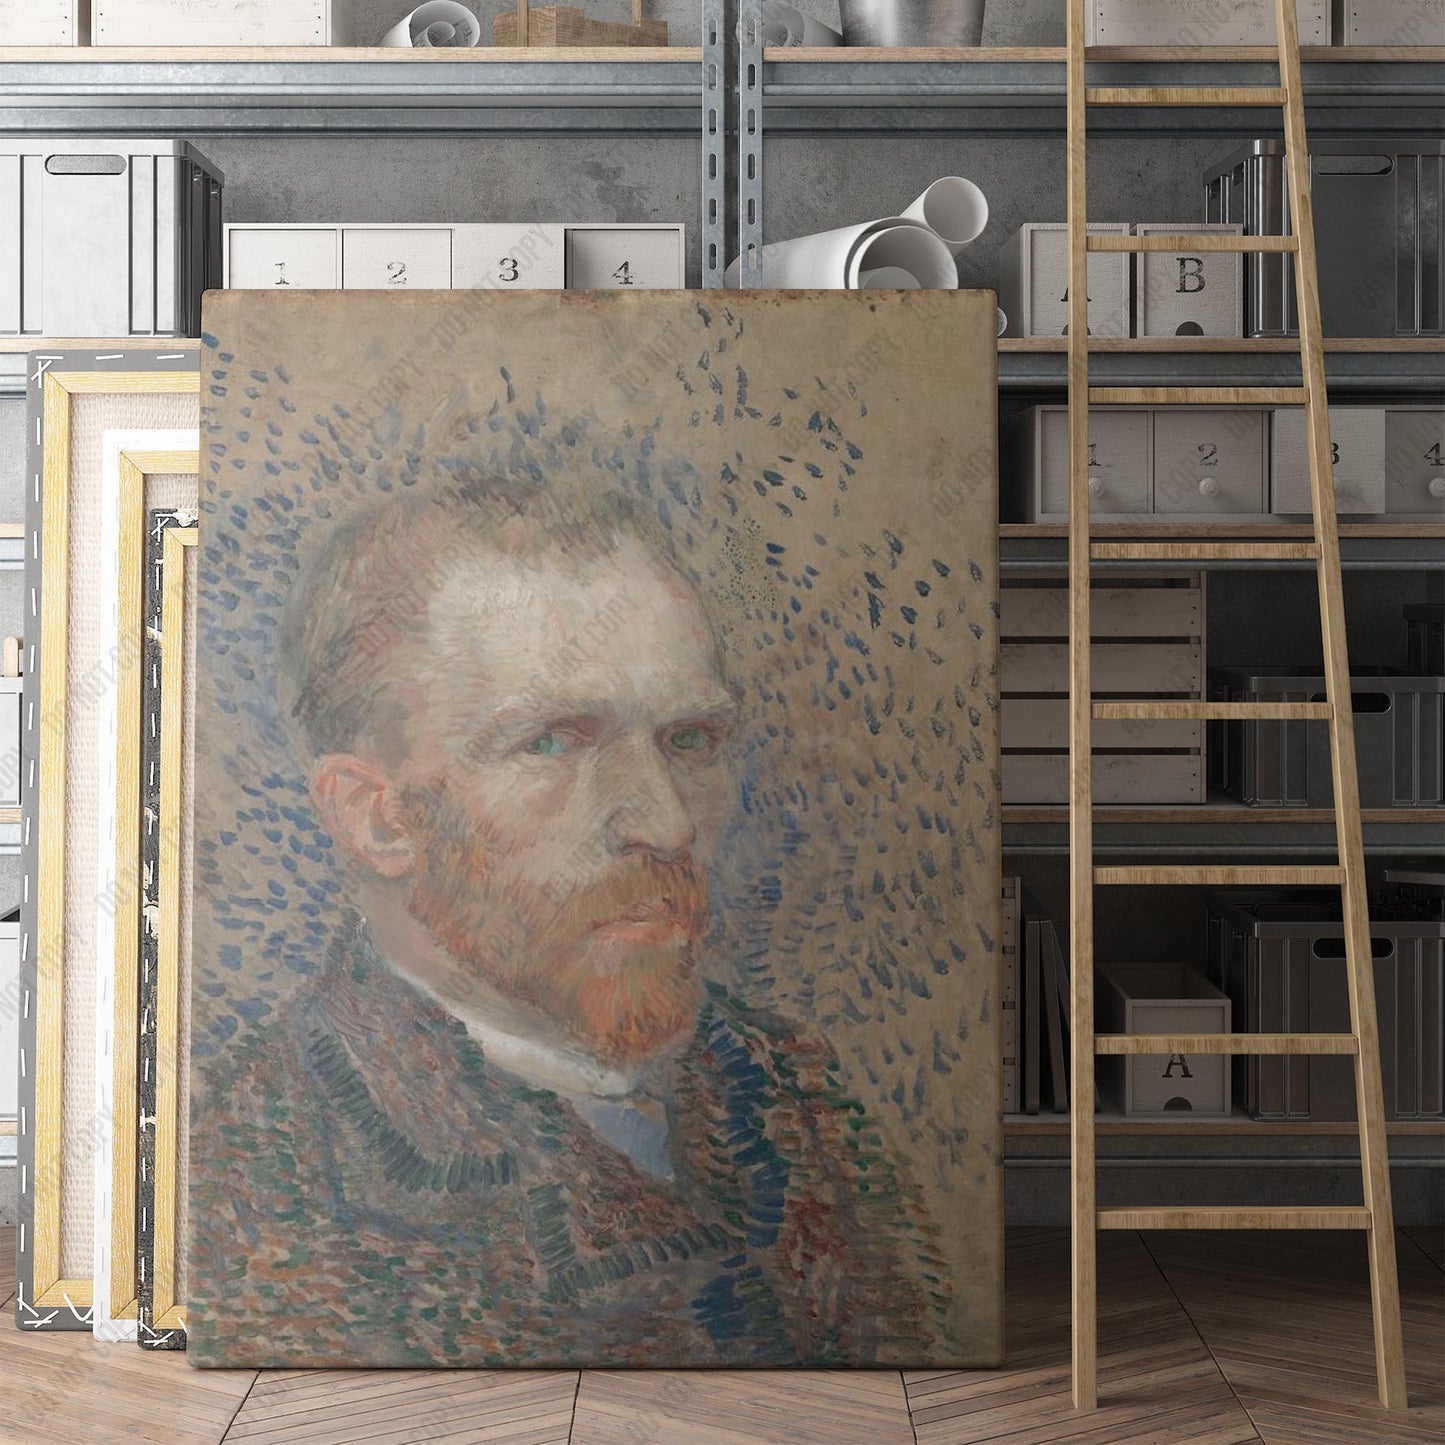 Self-Portrait (1887) by Van Gogh